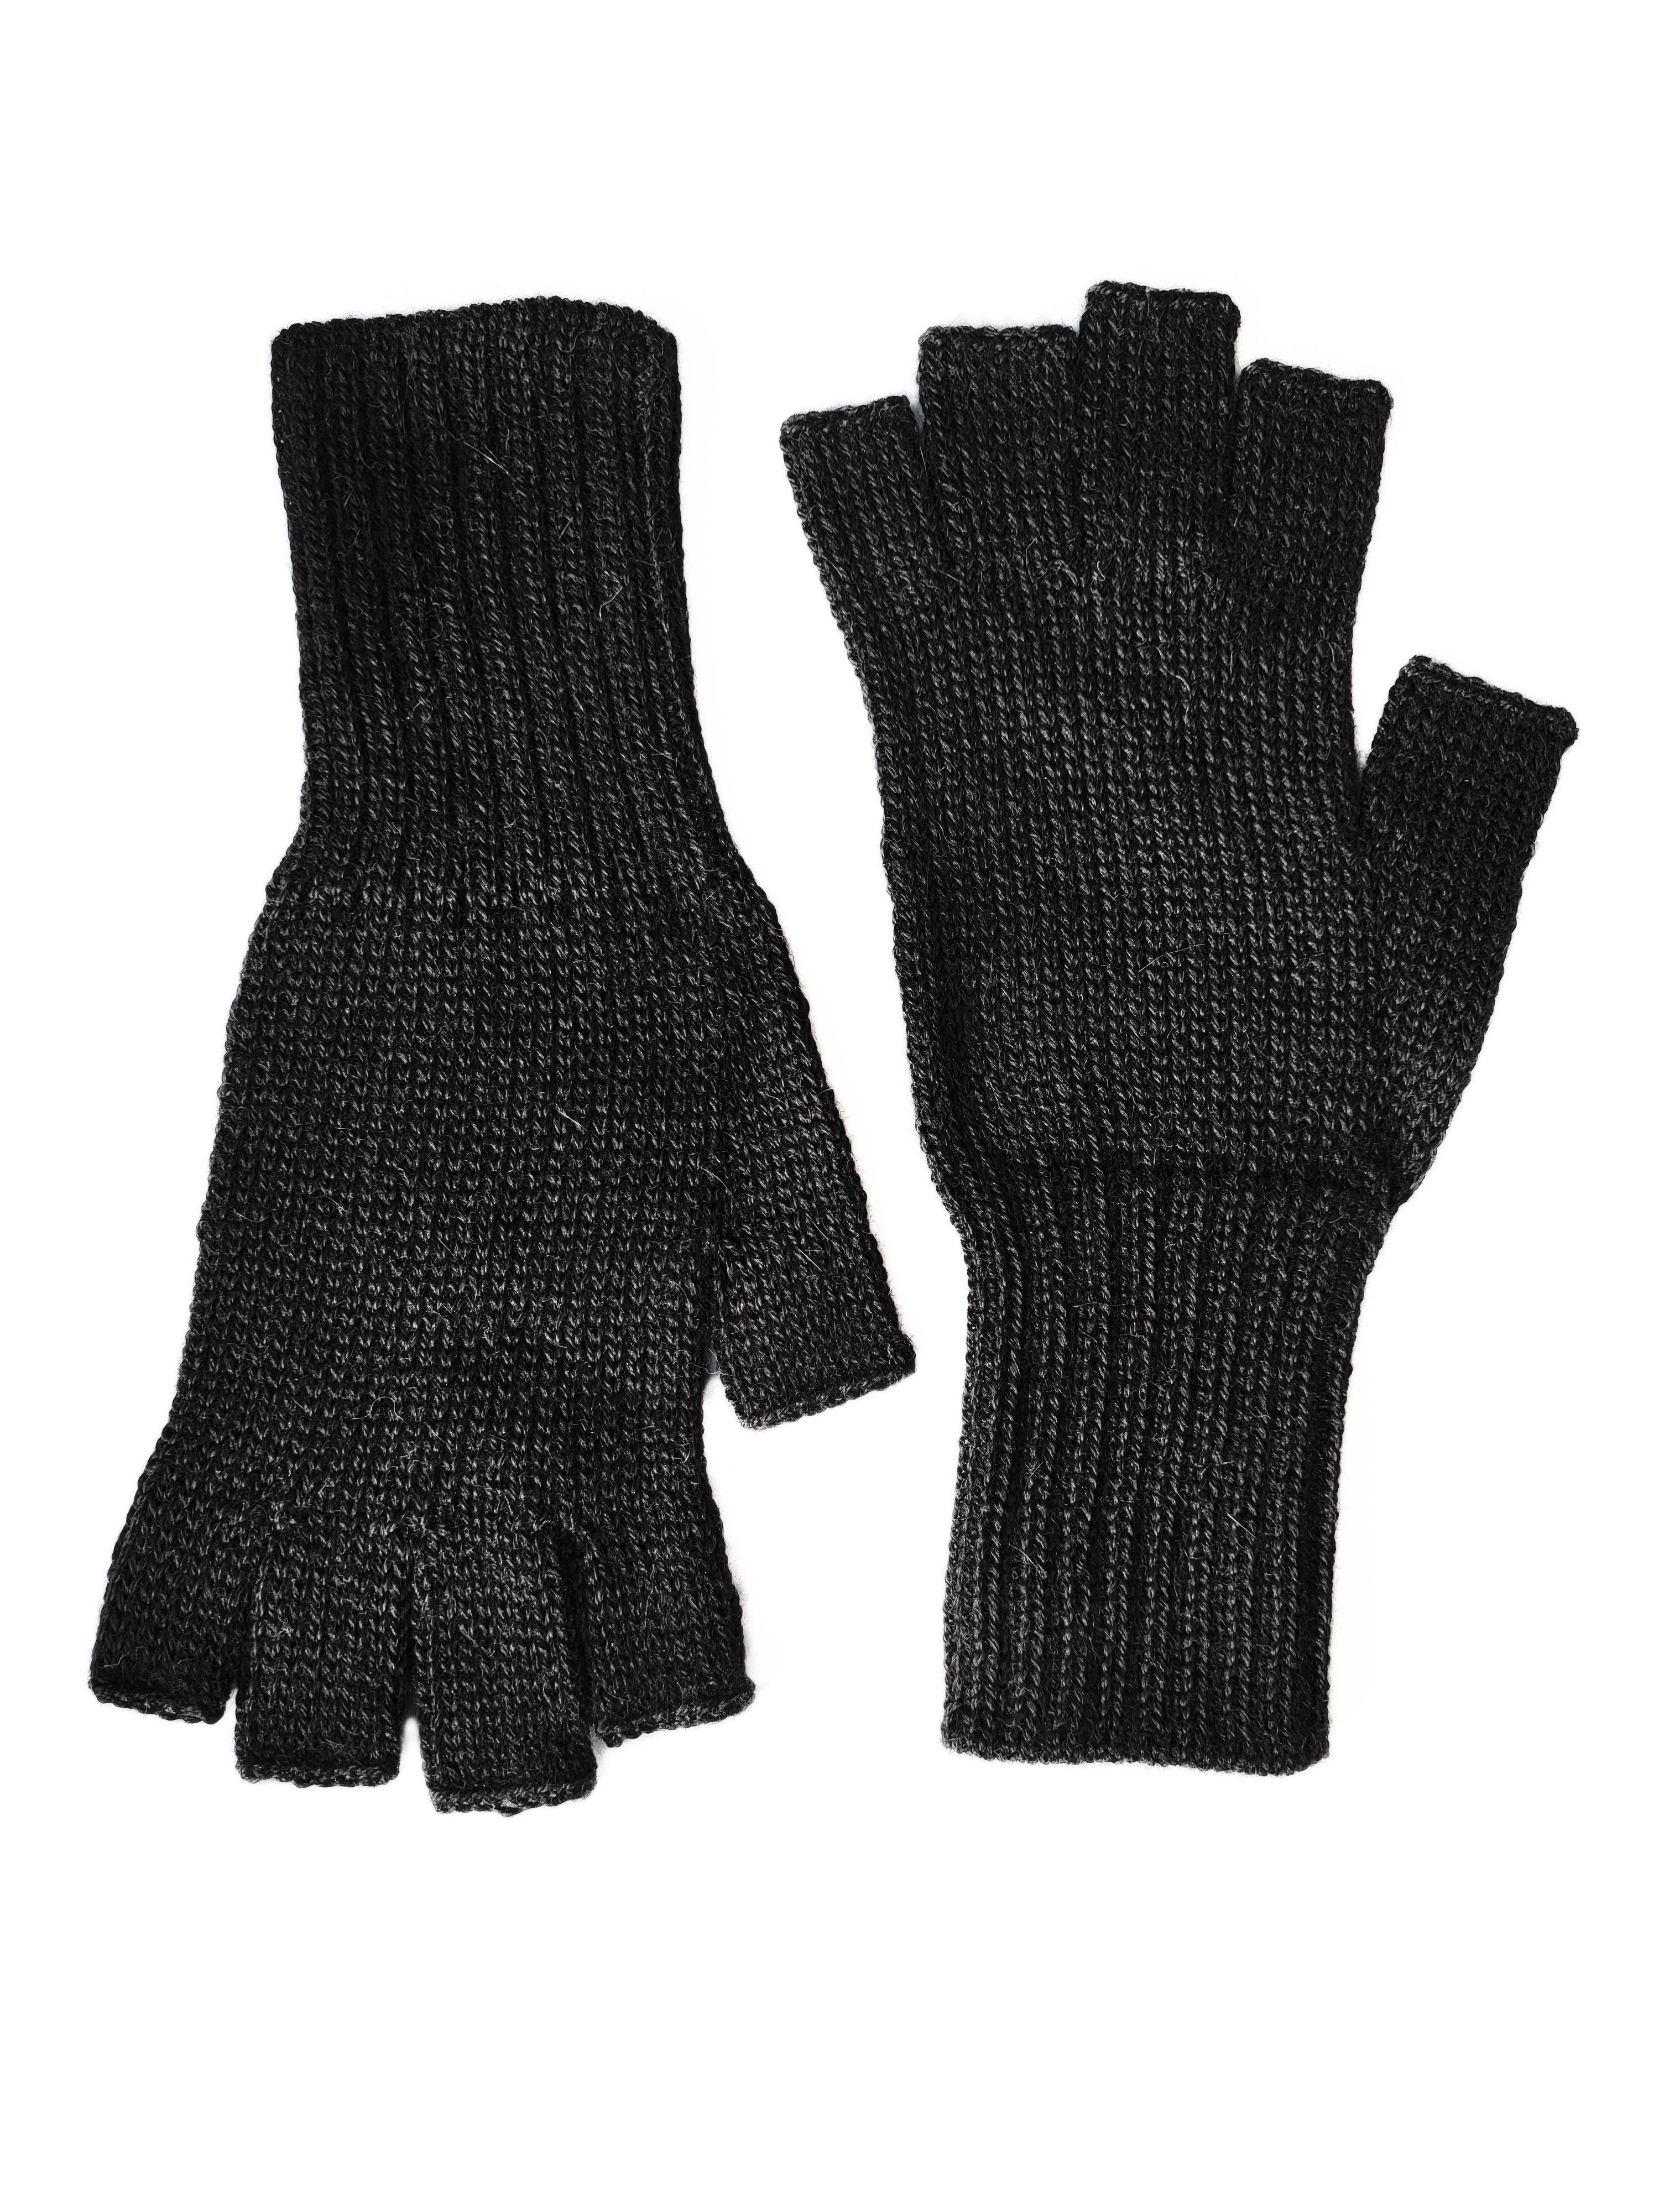 Guantiless Gear Posh schwarz Strickhandschuhe Halb-Fingerhandschuhe Alpaka